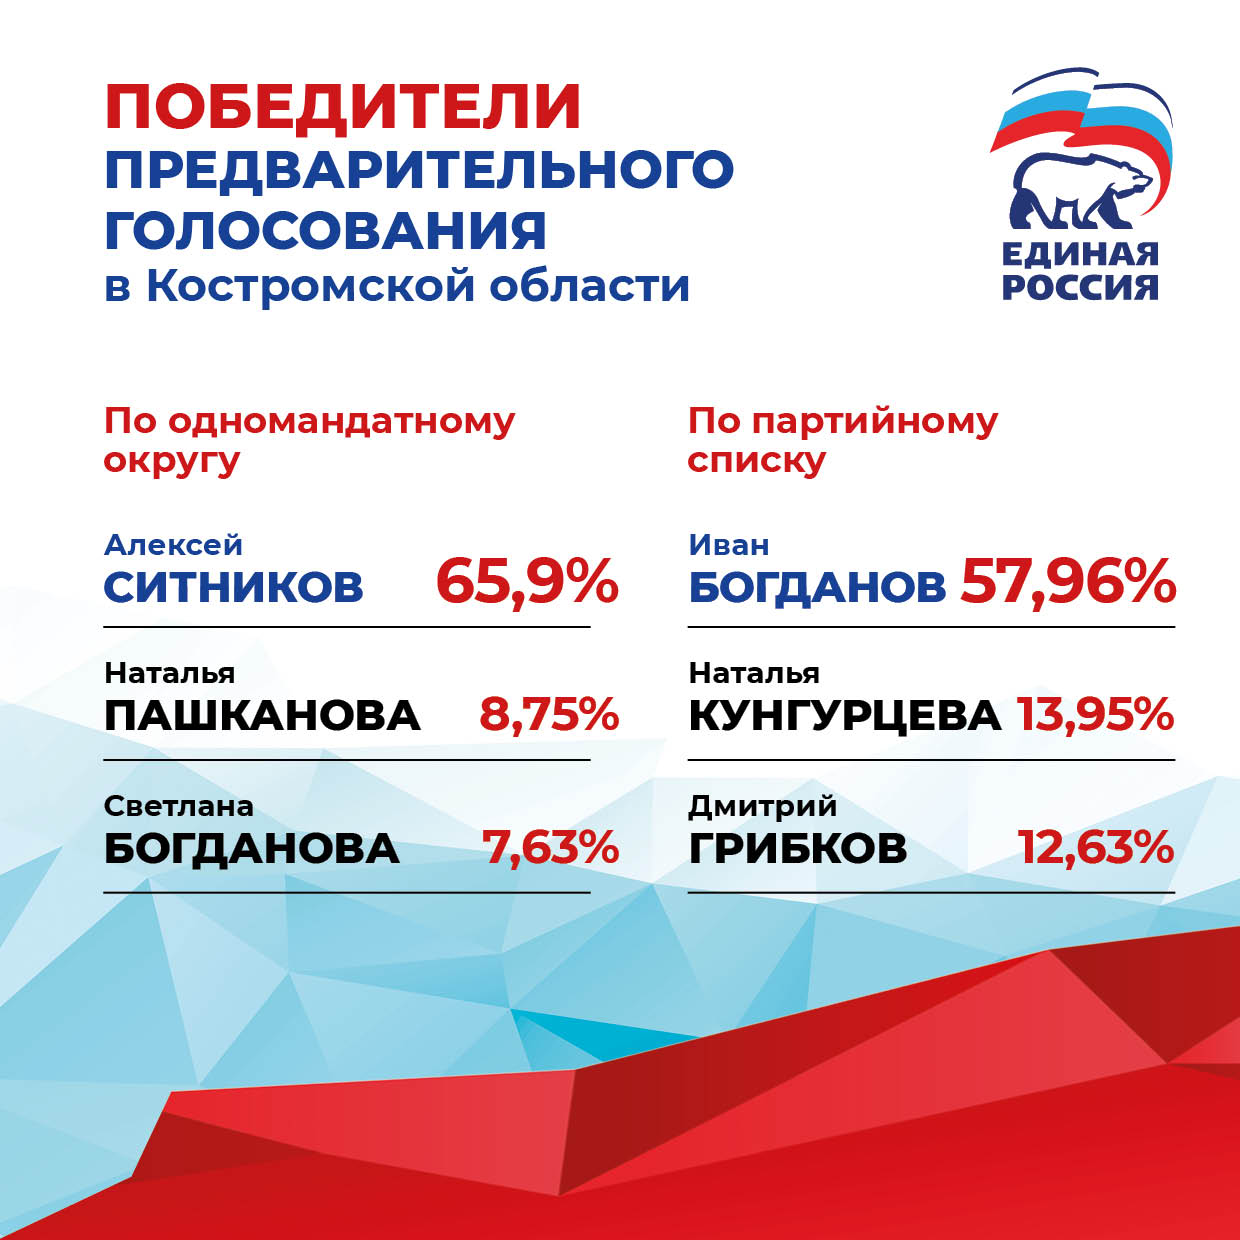 Определены победители предварительного голосования «Единой России» в Костромской области